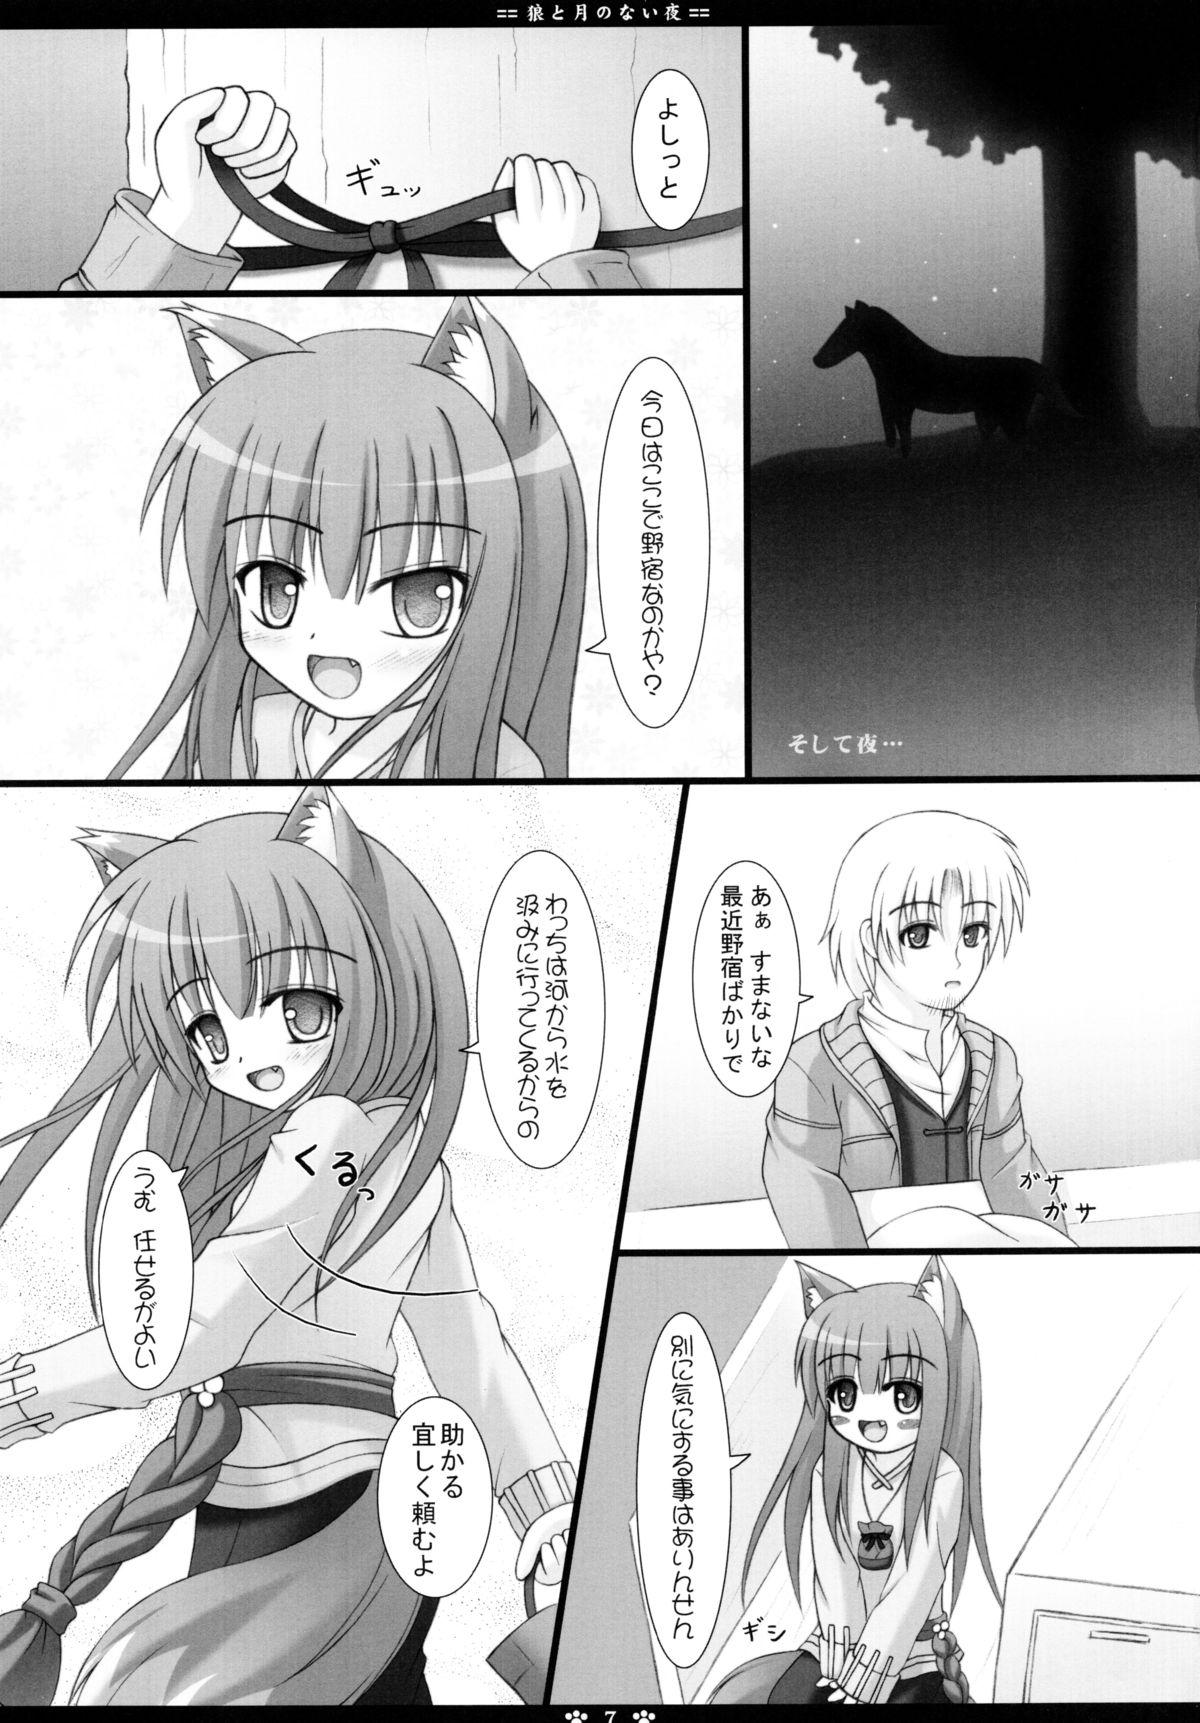 Sologirl Ookami to Tsuki no Nai Yoru - Spice and wolf Morena - Page 7